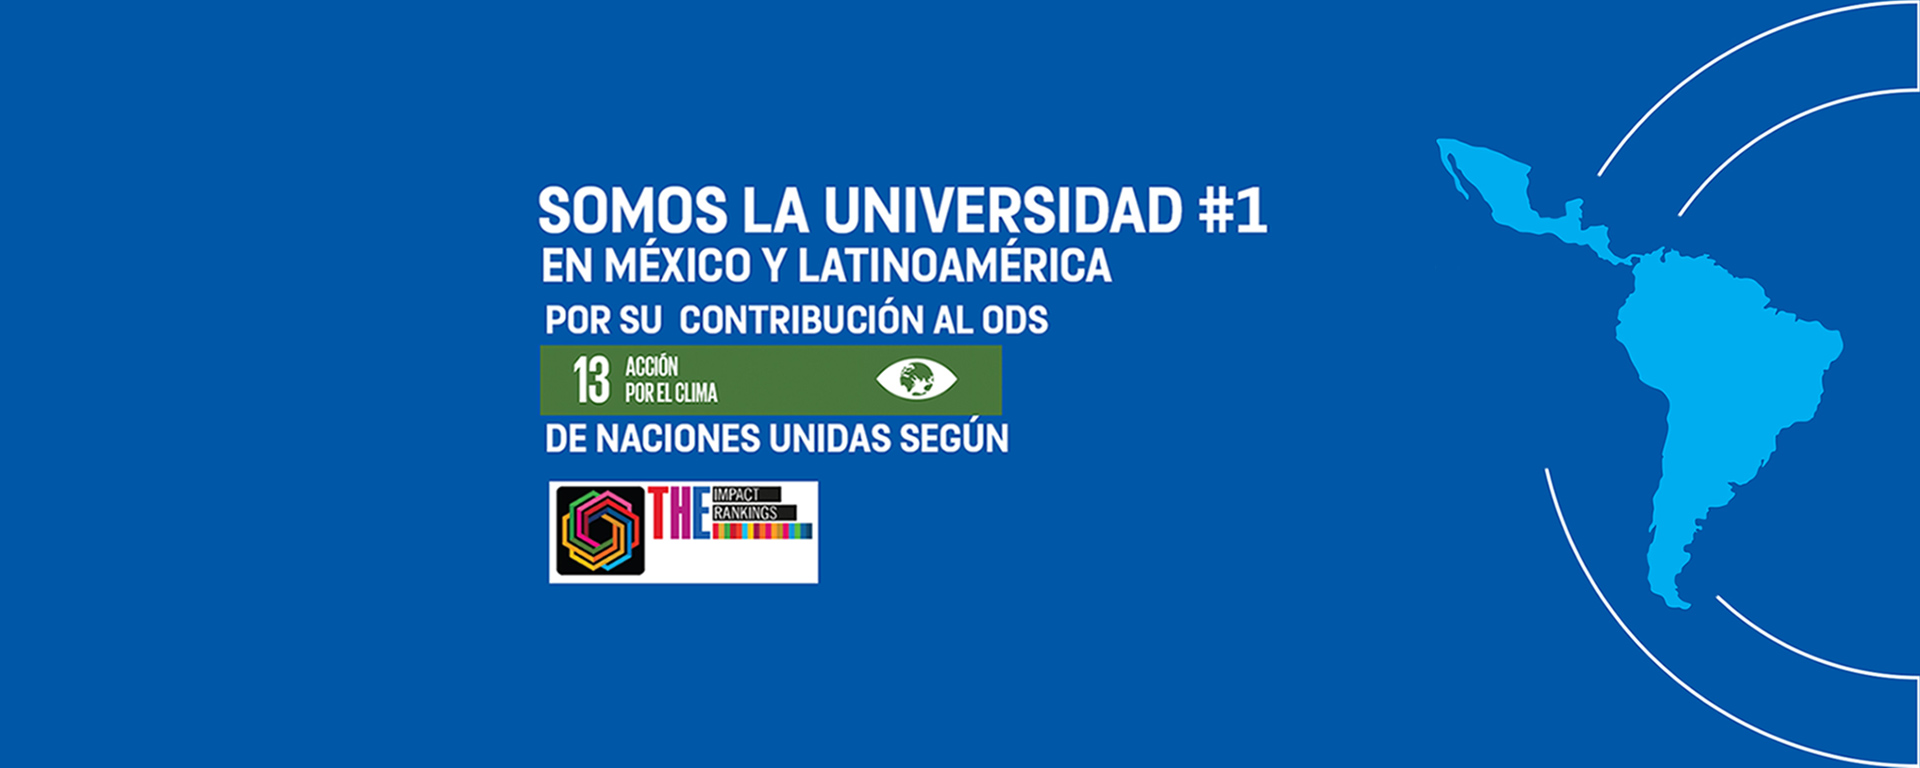 Somos la Universidad número 1 en México y Latinoamerica por su contribución al ODS 13 acción por el clima.